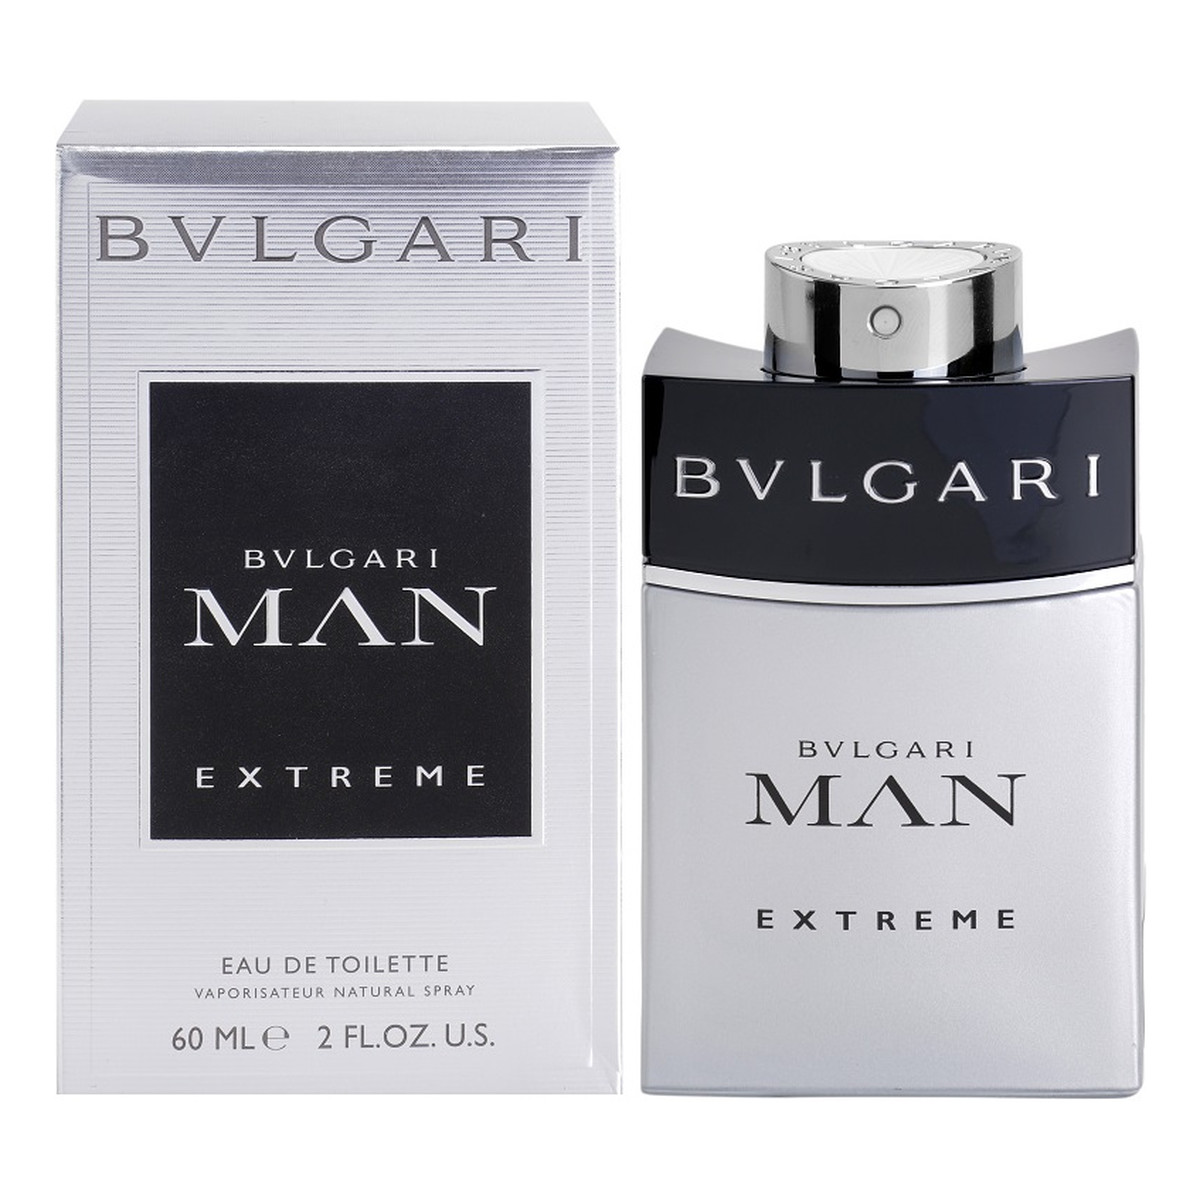 Bvlgari Man Extreme woda toaletowa dla mężczyzn 60ml